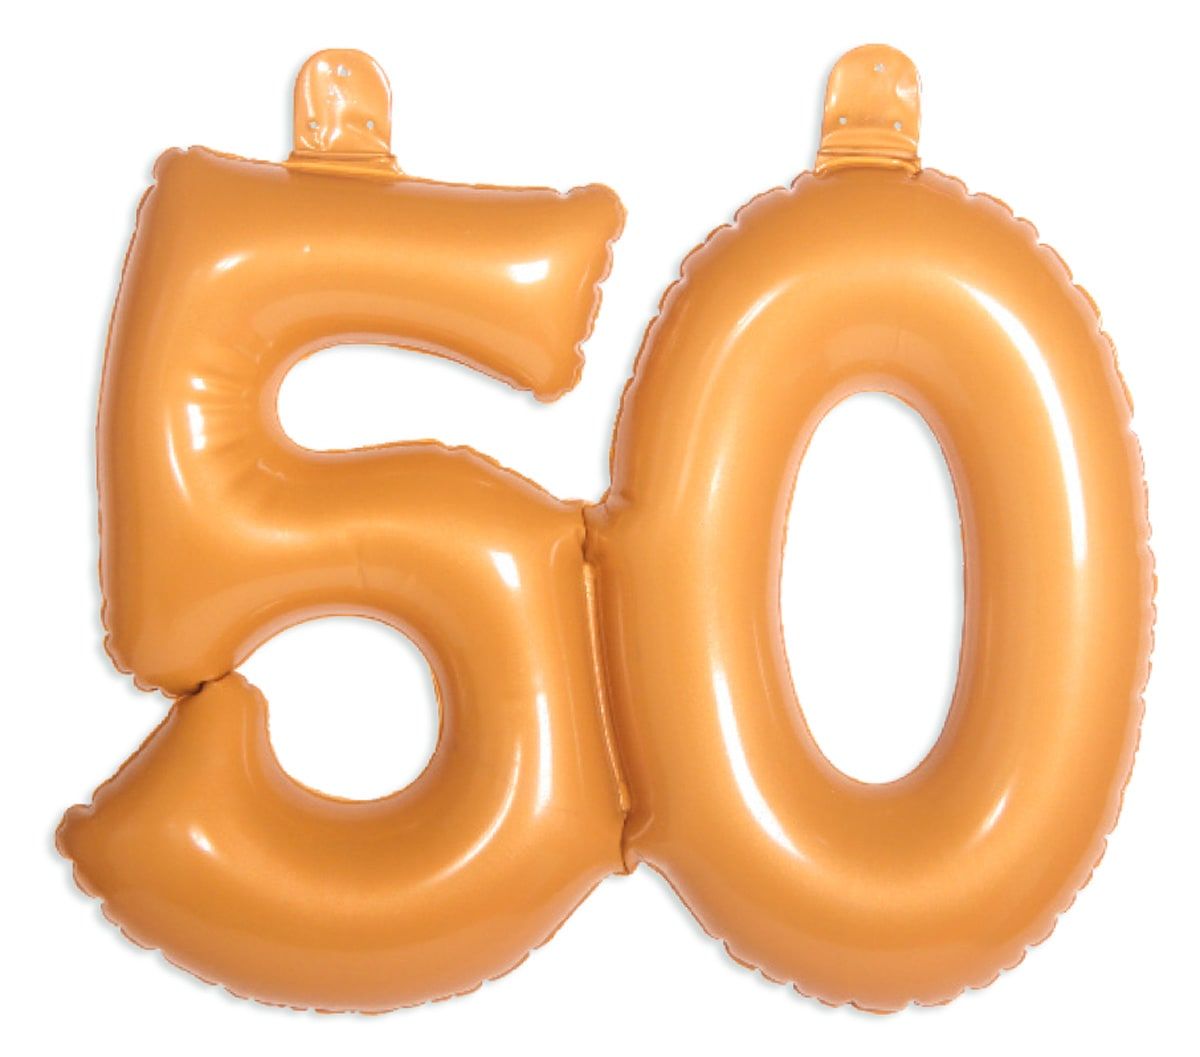 Opblaascijfer goud 50 jubileum verjaardag